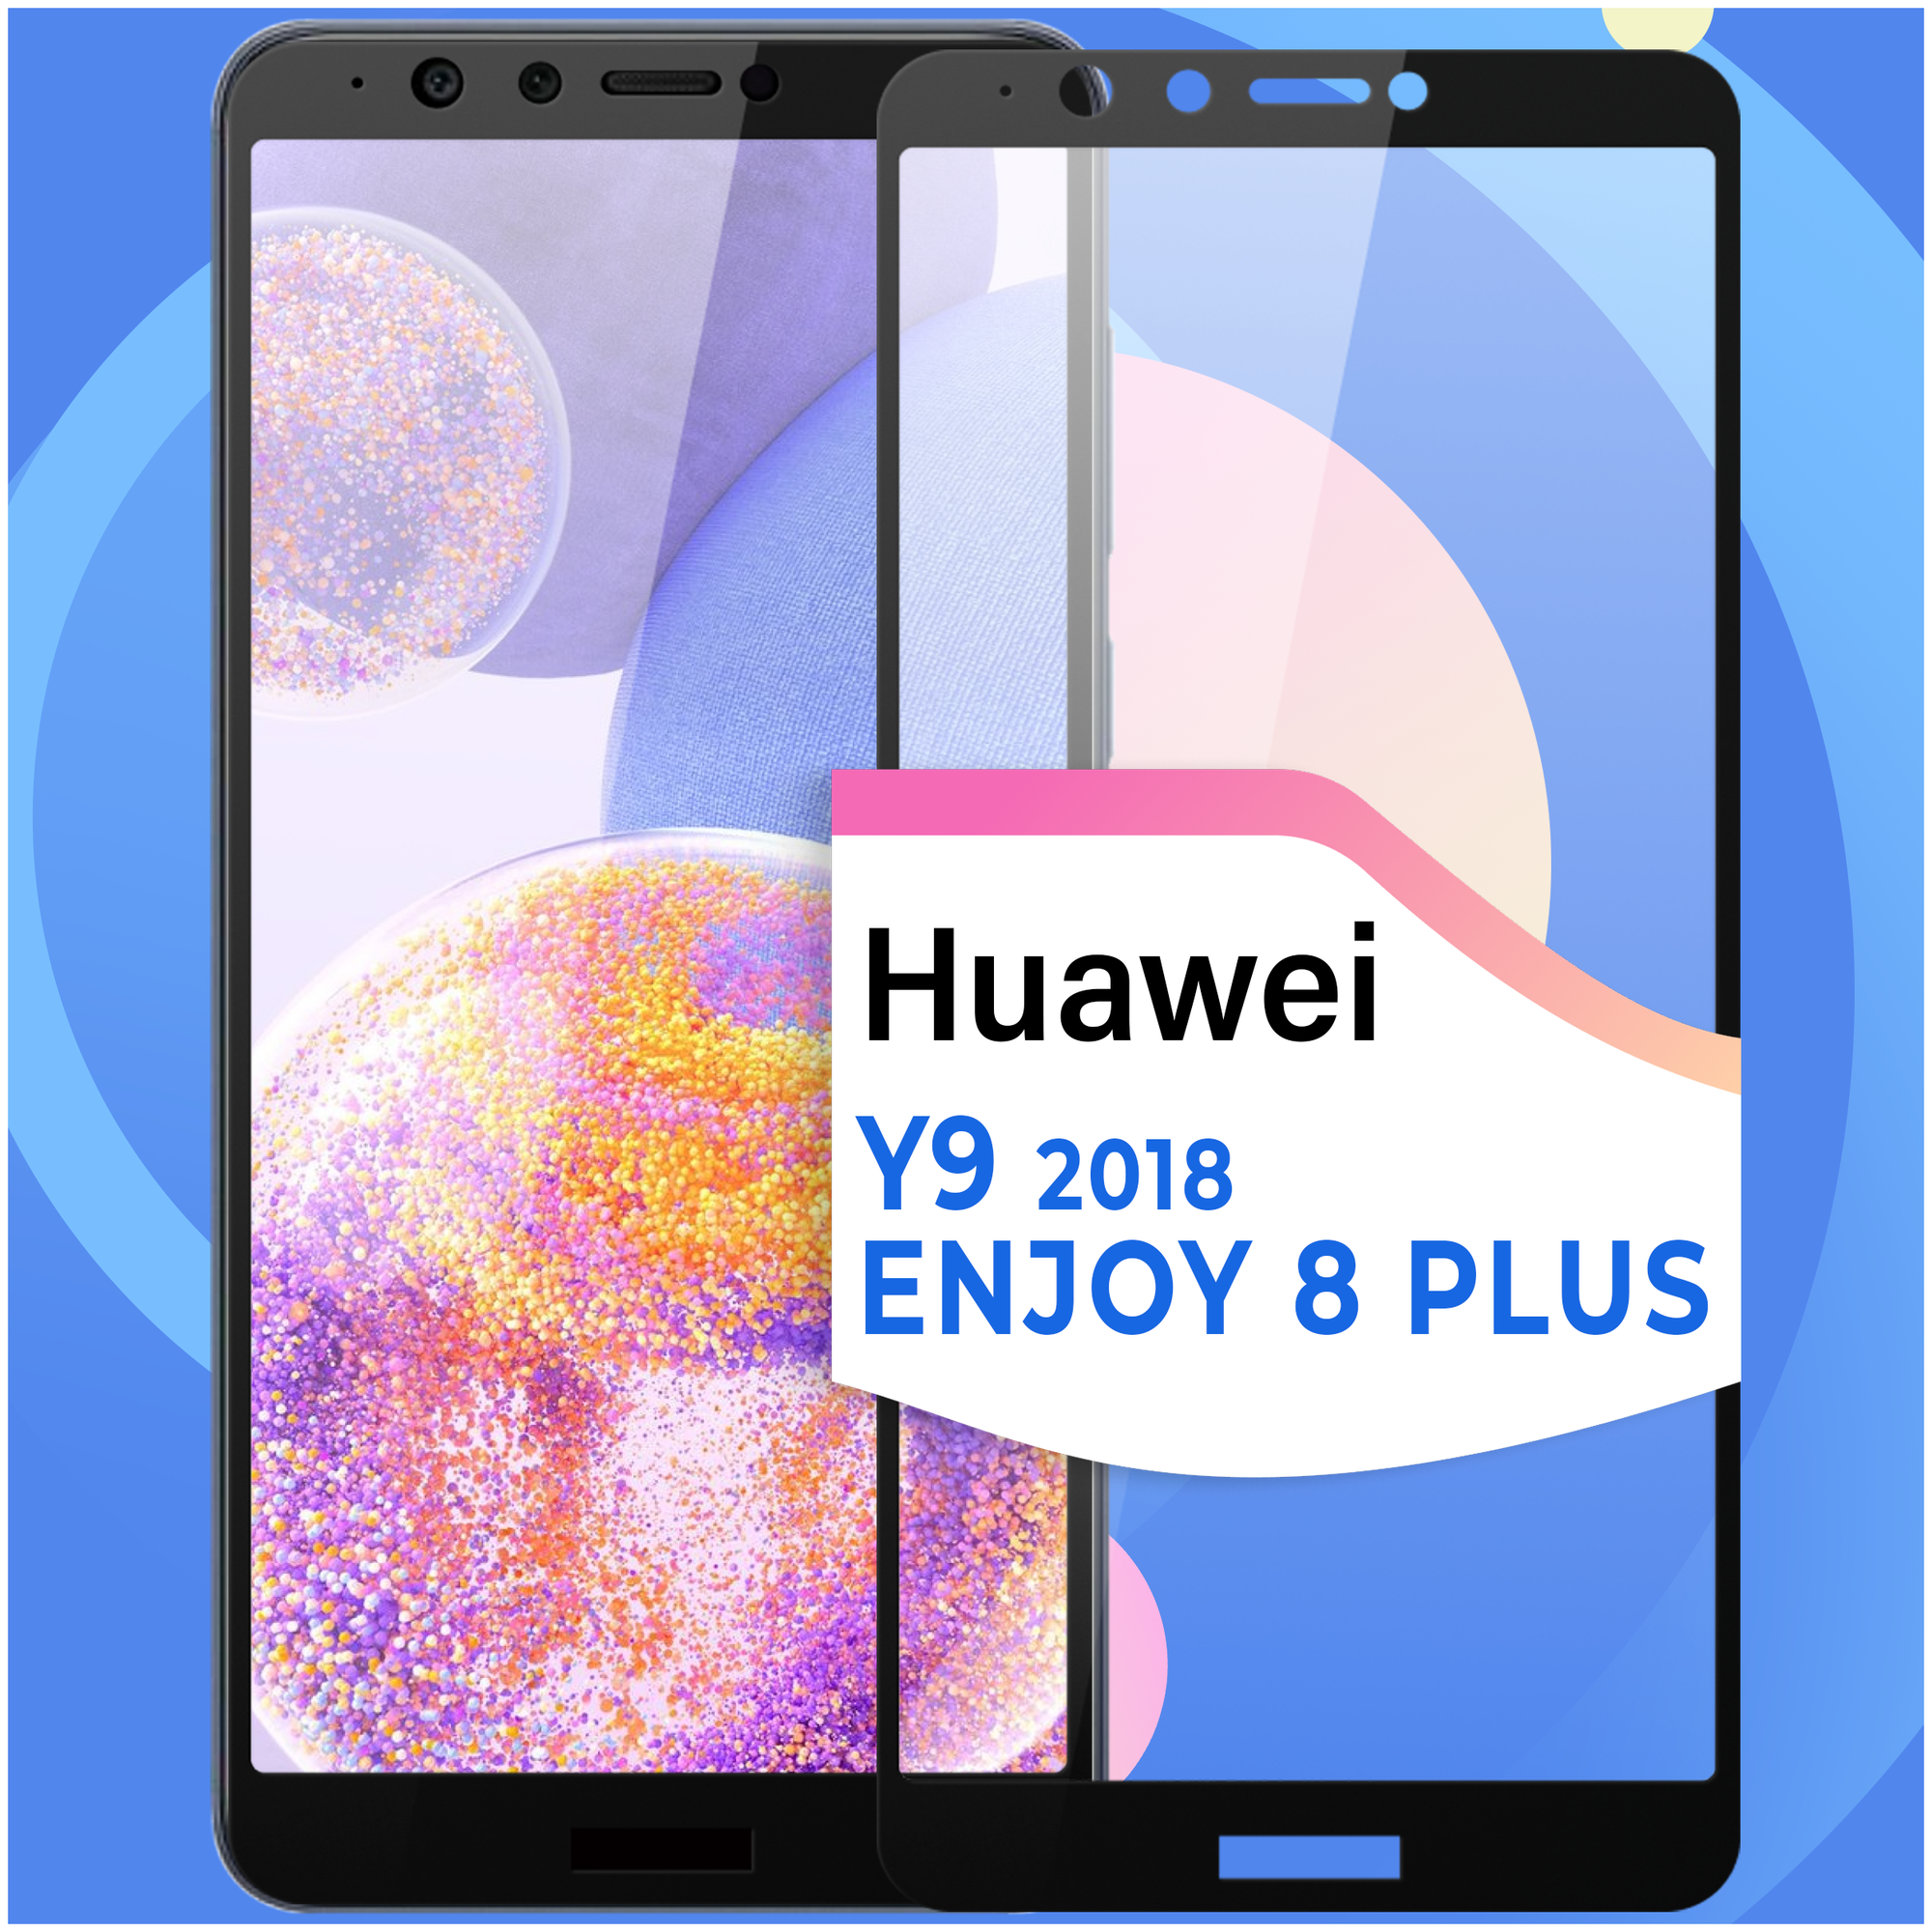 Комплект 2 шт. Противоударное стекло для смартфона Huawei Y9 2018 и Huawei Enjoy 8 Plus / Стекло на смартфон Хуавей У9 2018 и Хуавей Энджой 8 Плюс